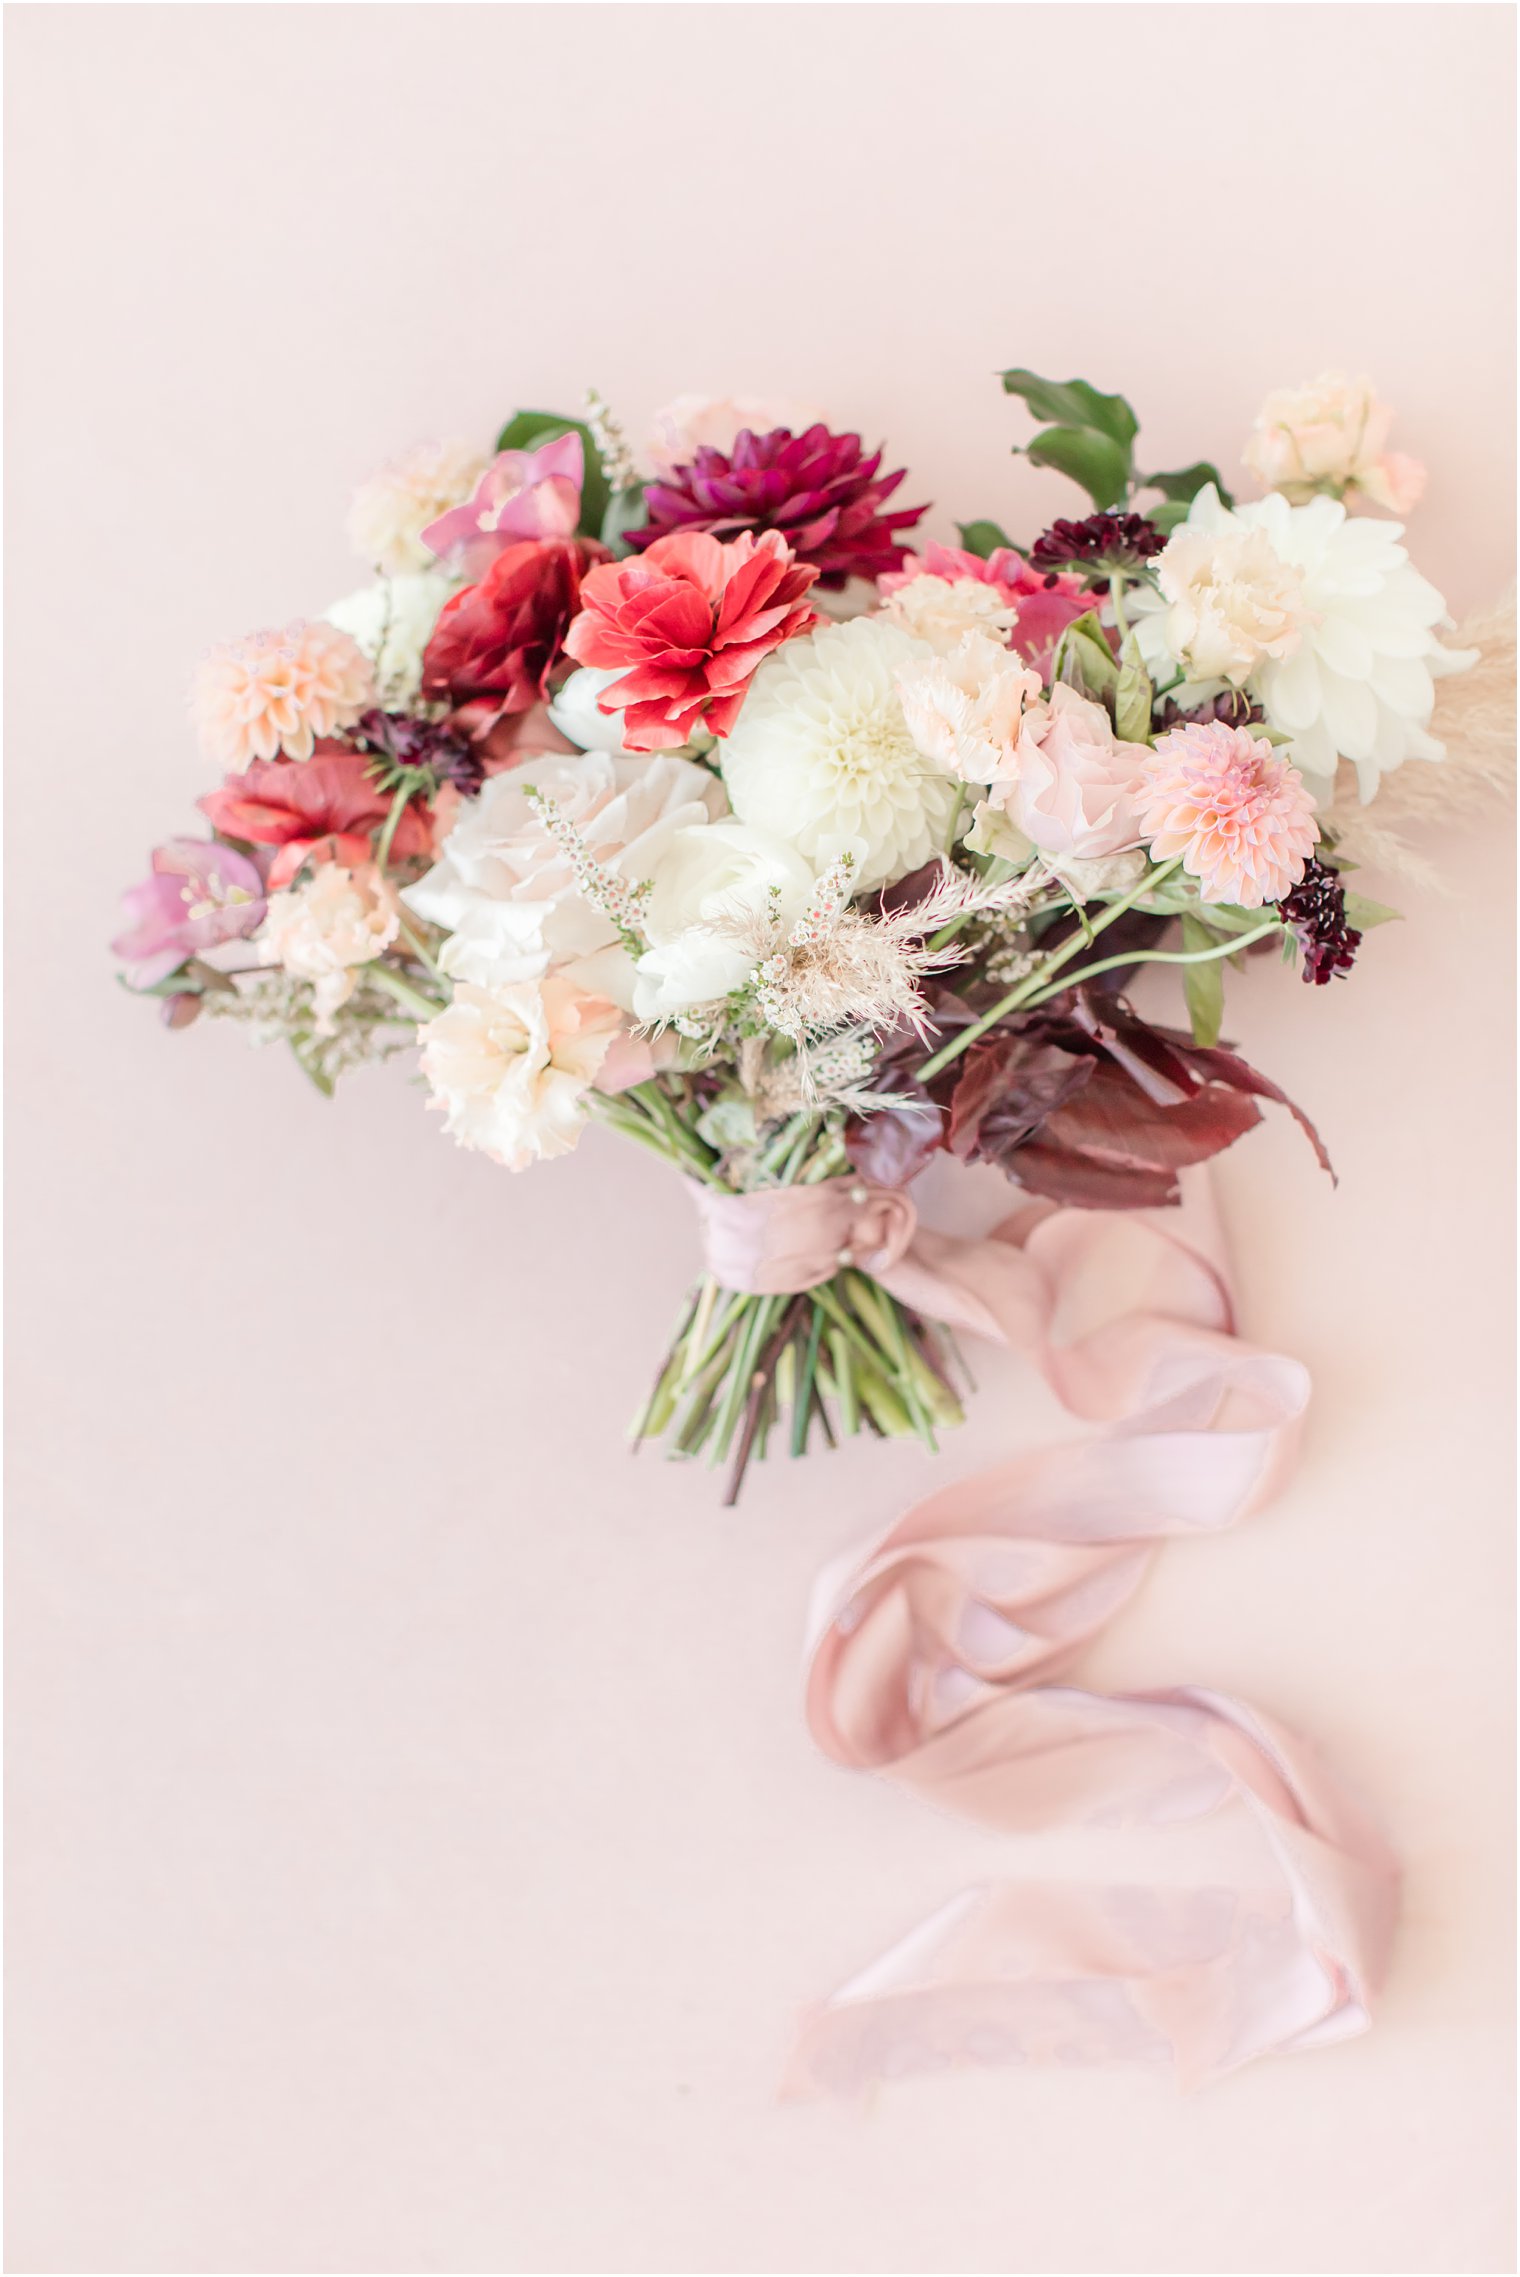 Wedding bouquet by Cassandra Shah Flowers